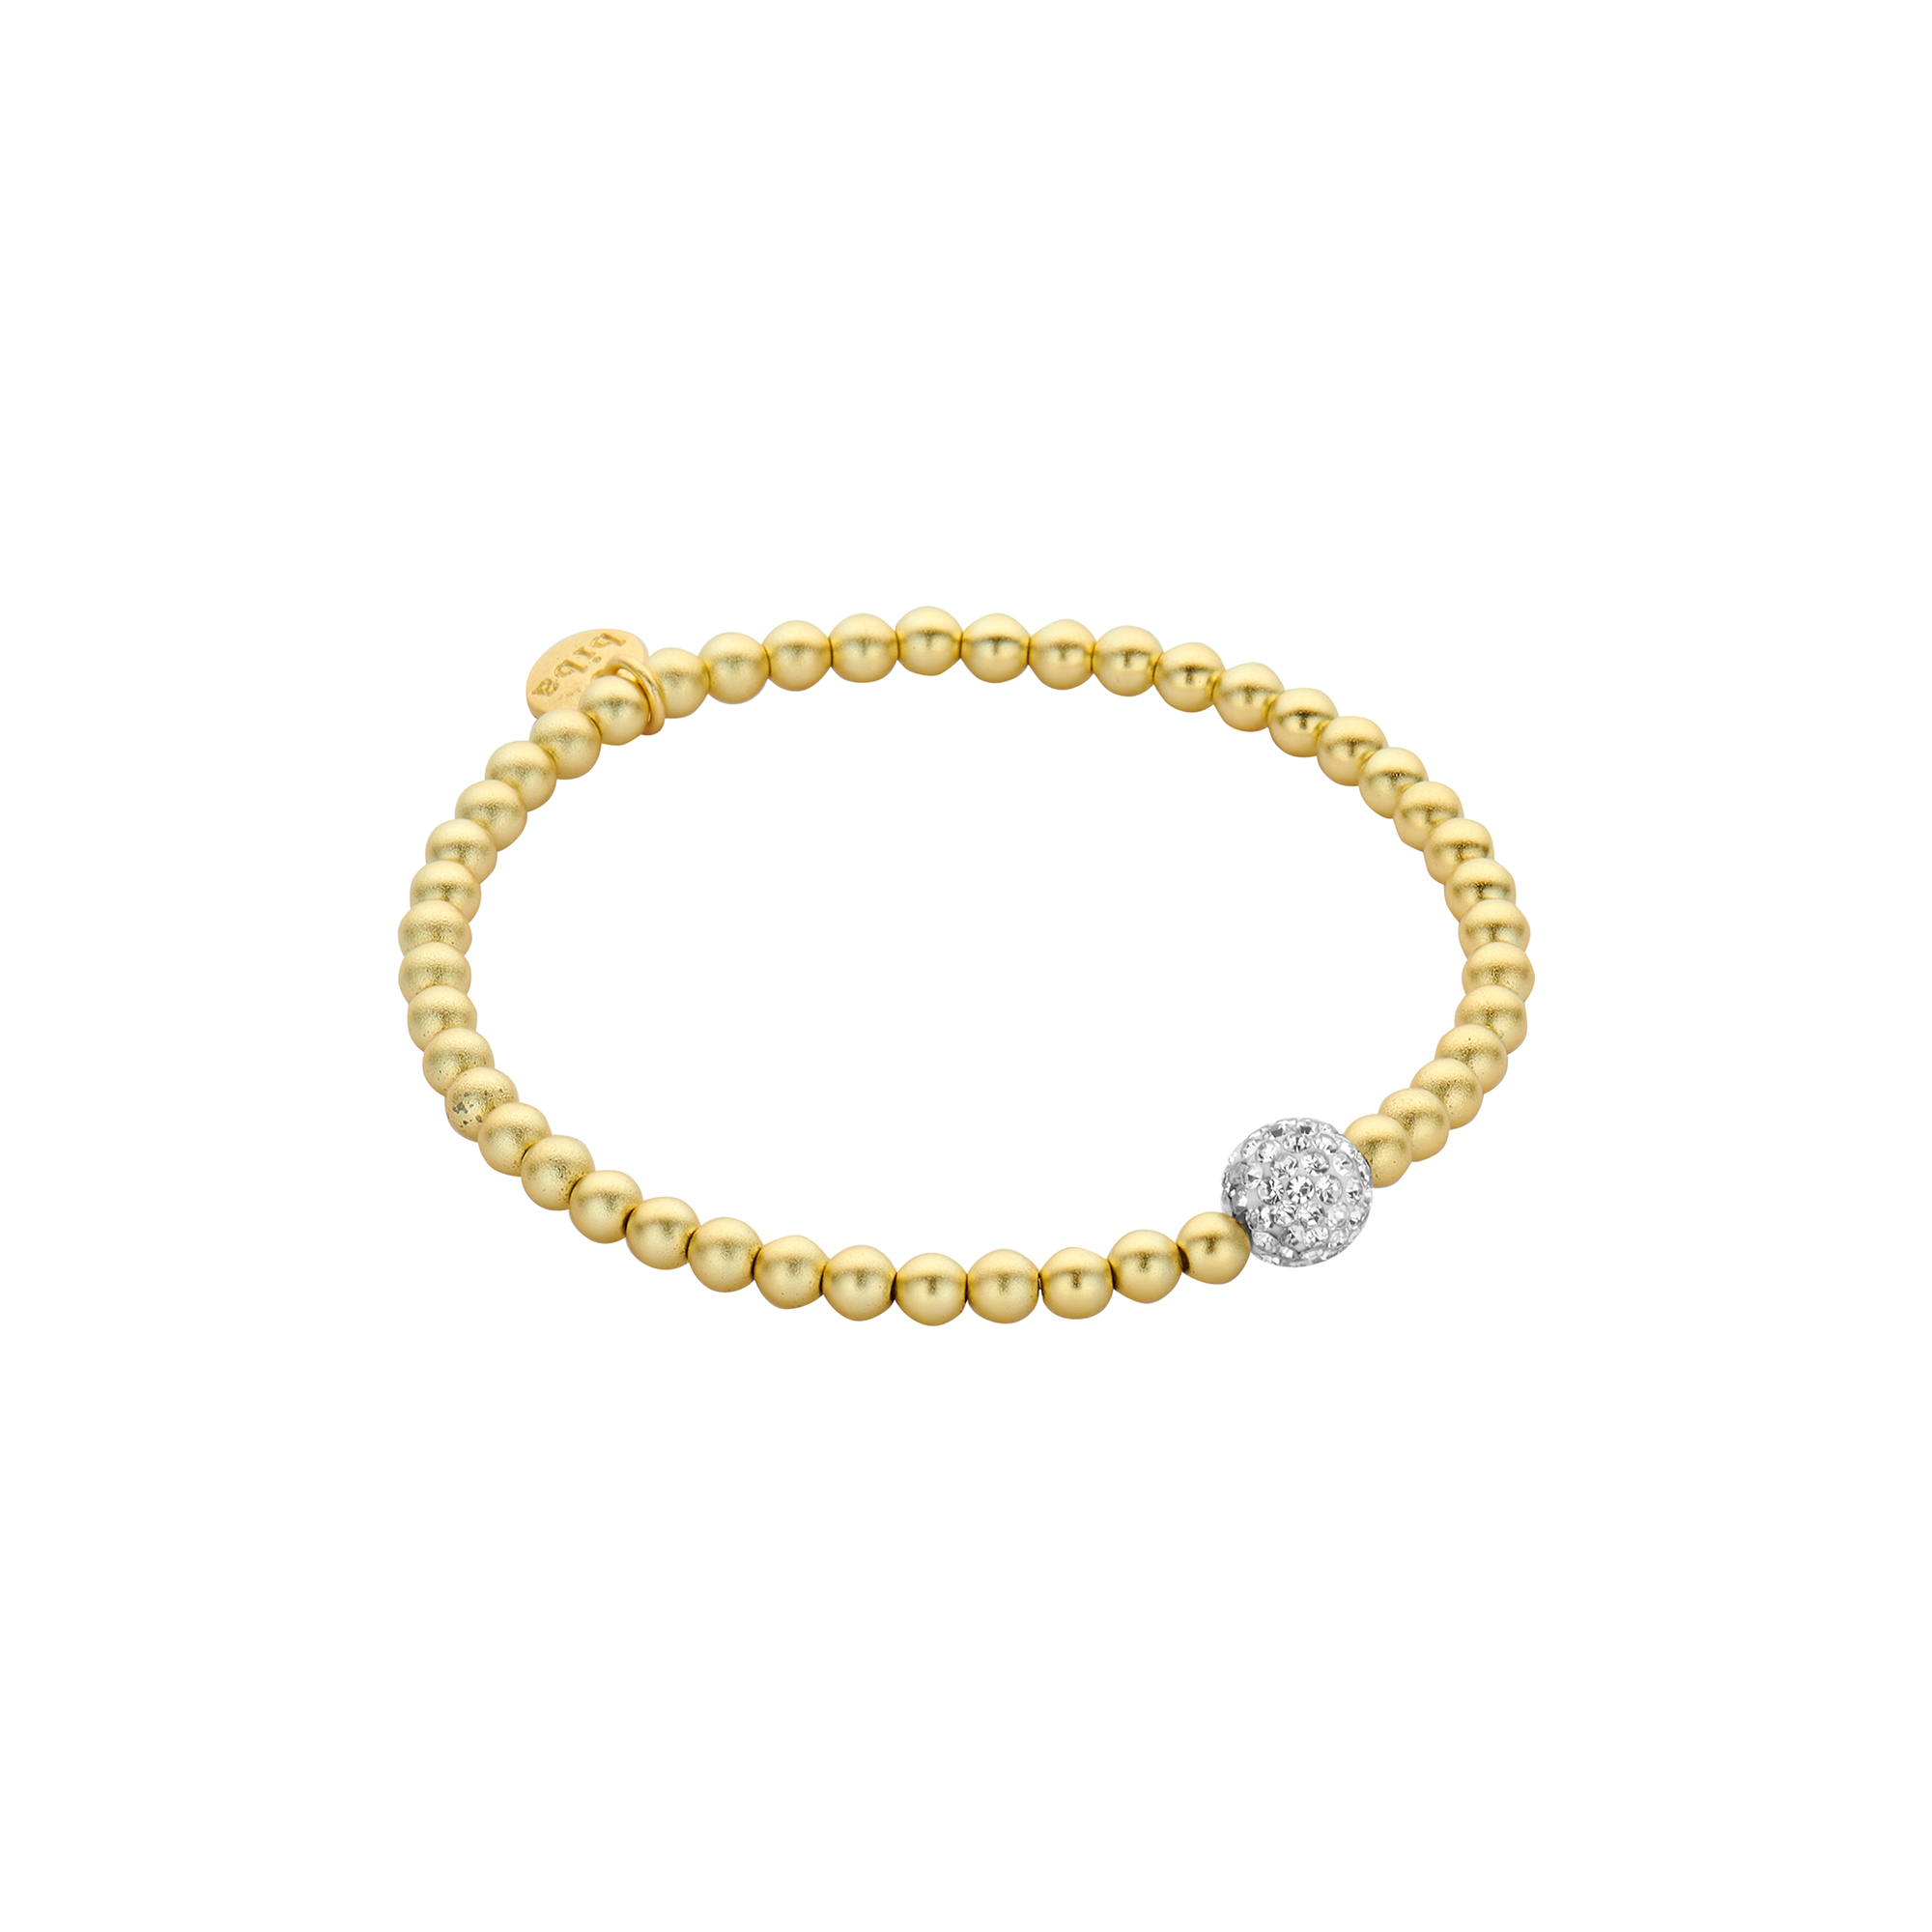 Biba Perlen-Armband aus Metall goldfarben matt